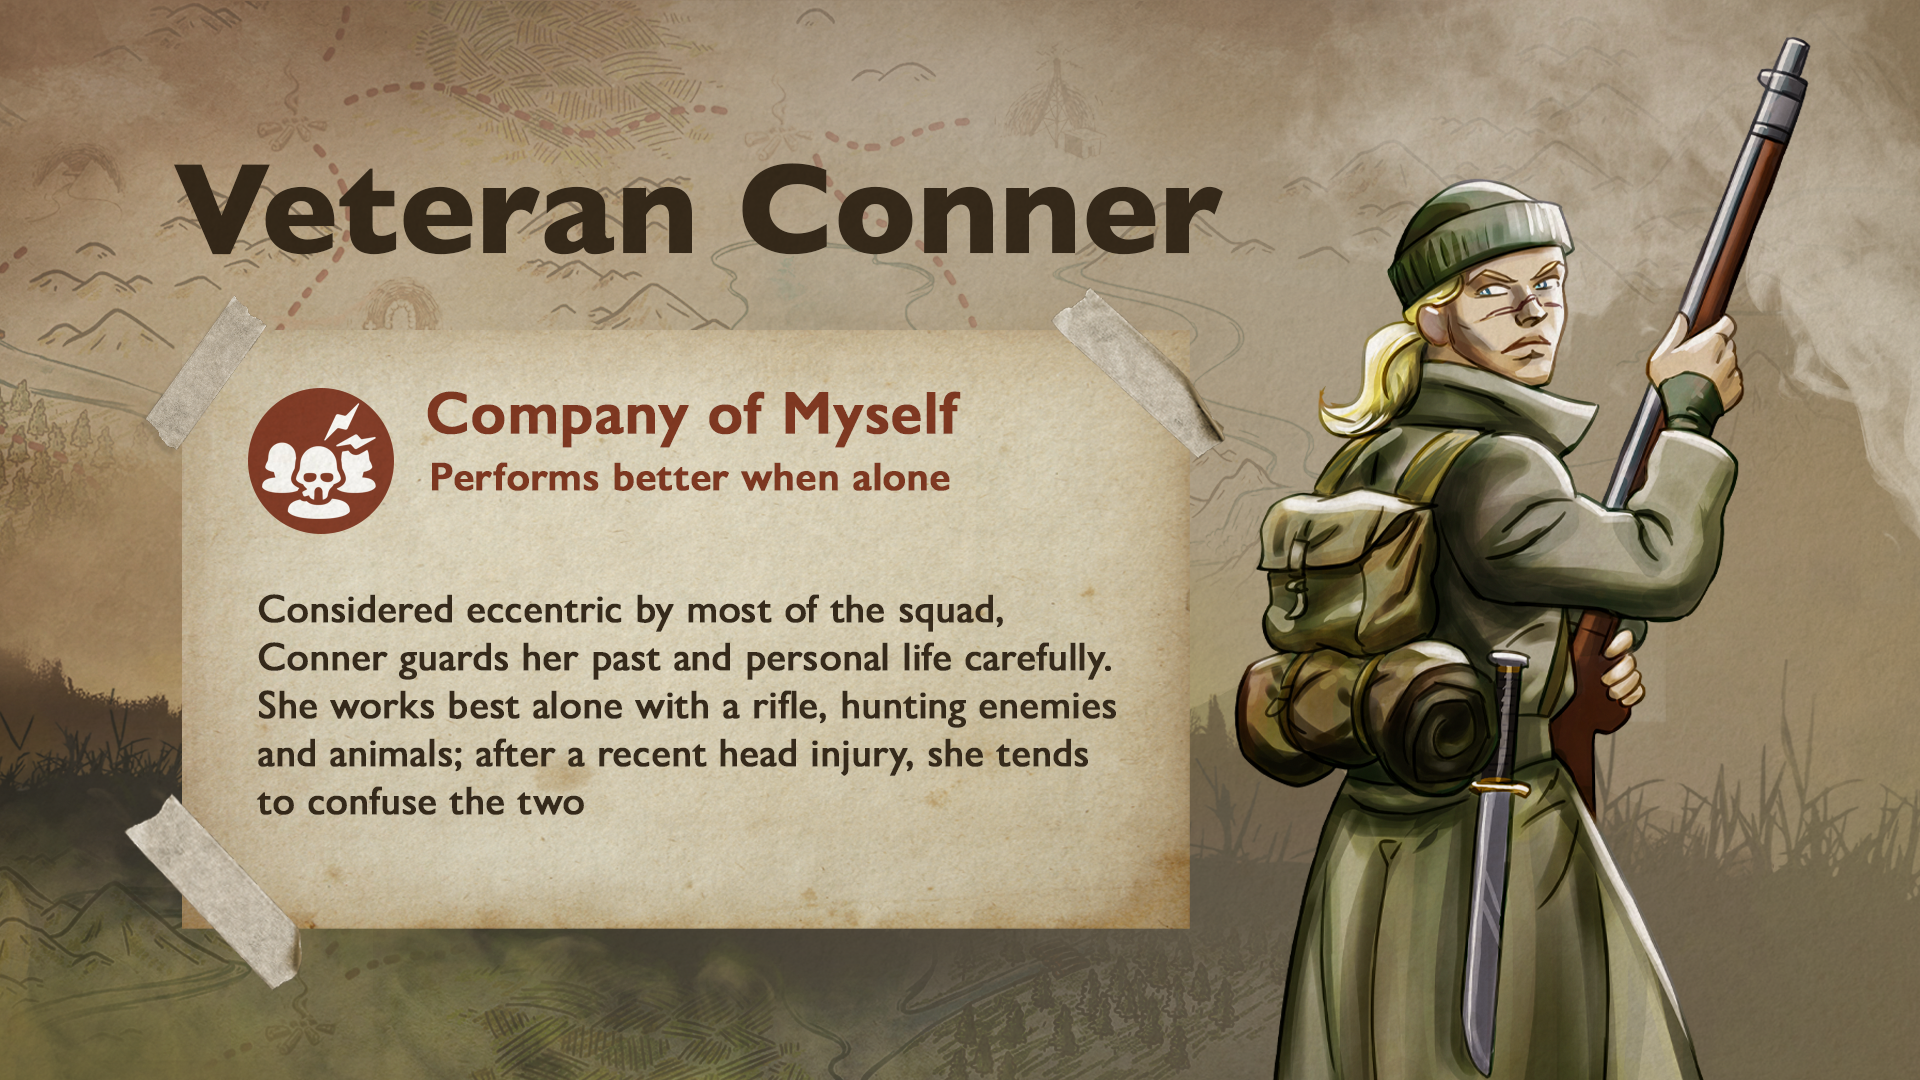 Profile: Conner